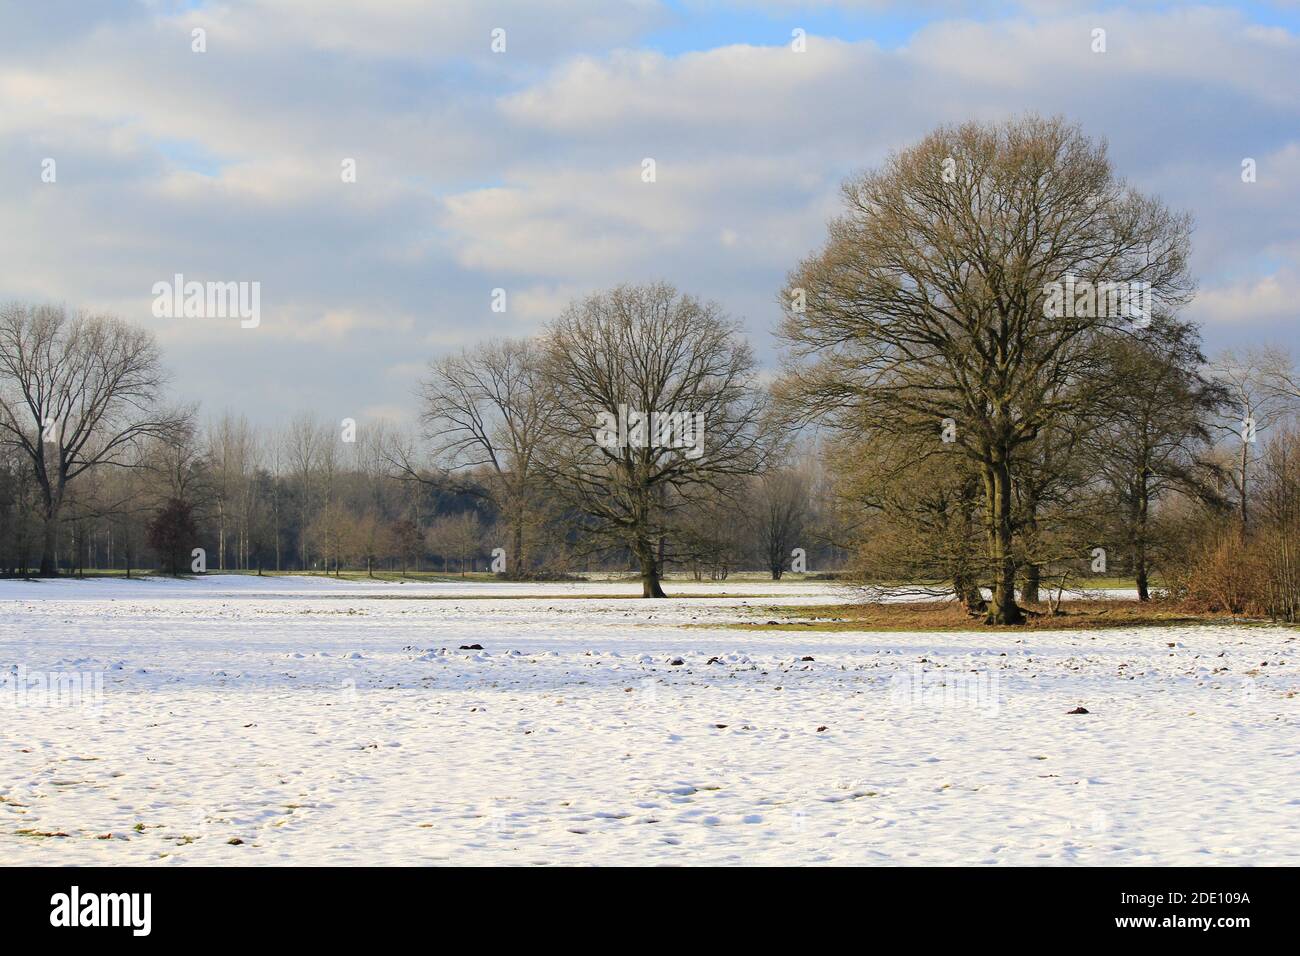 Schöne Winterlandschaft mit großen Bäumen auf einer weißen Wiese Mit Schnee und einem blauen Himmel mit Wolken in holland An einem sonnigen Tag Stockfoto